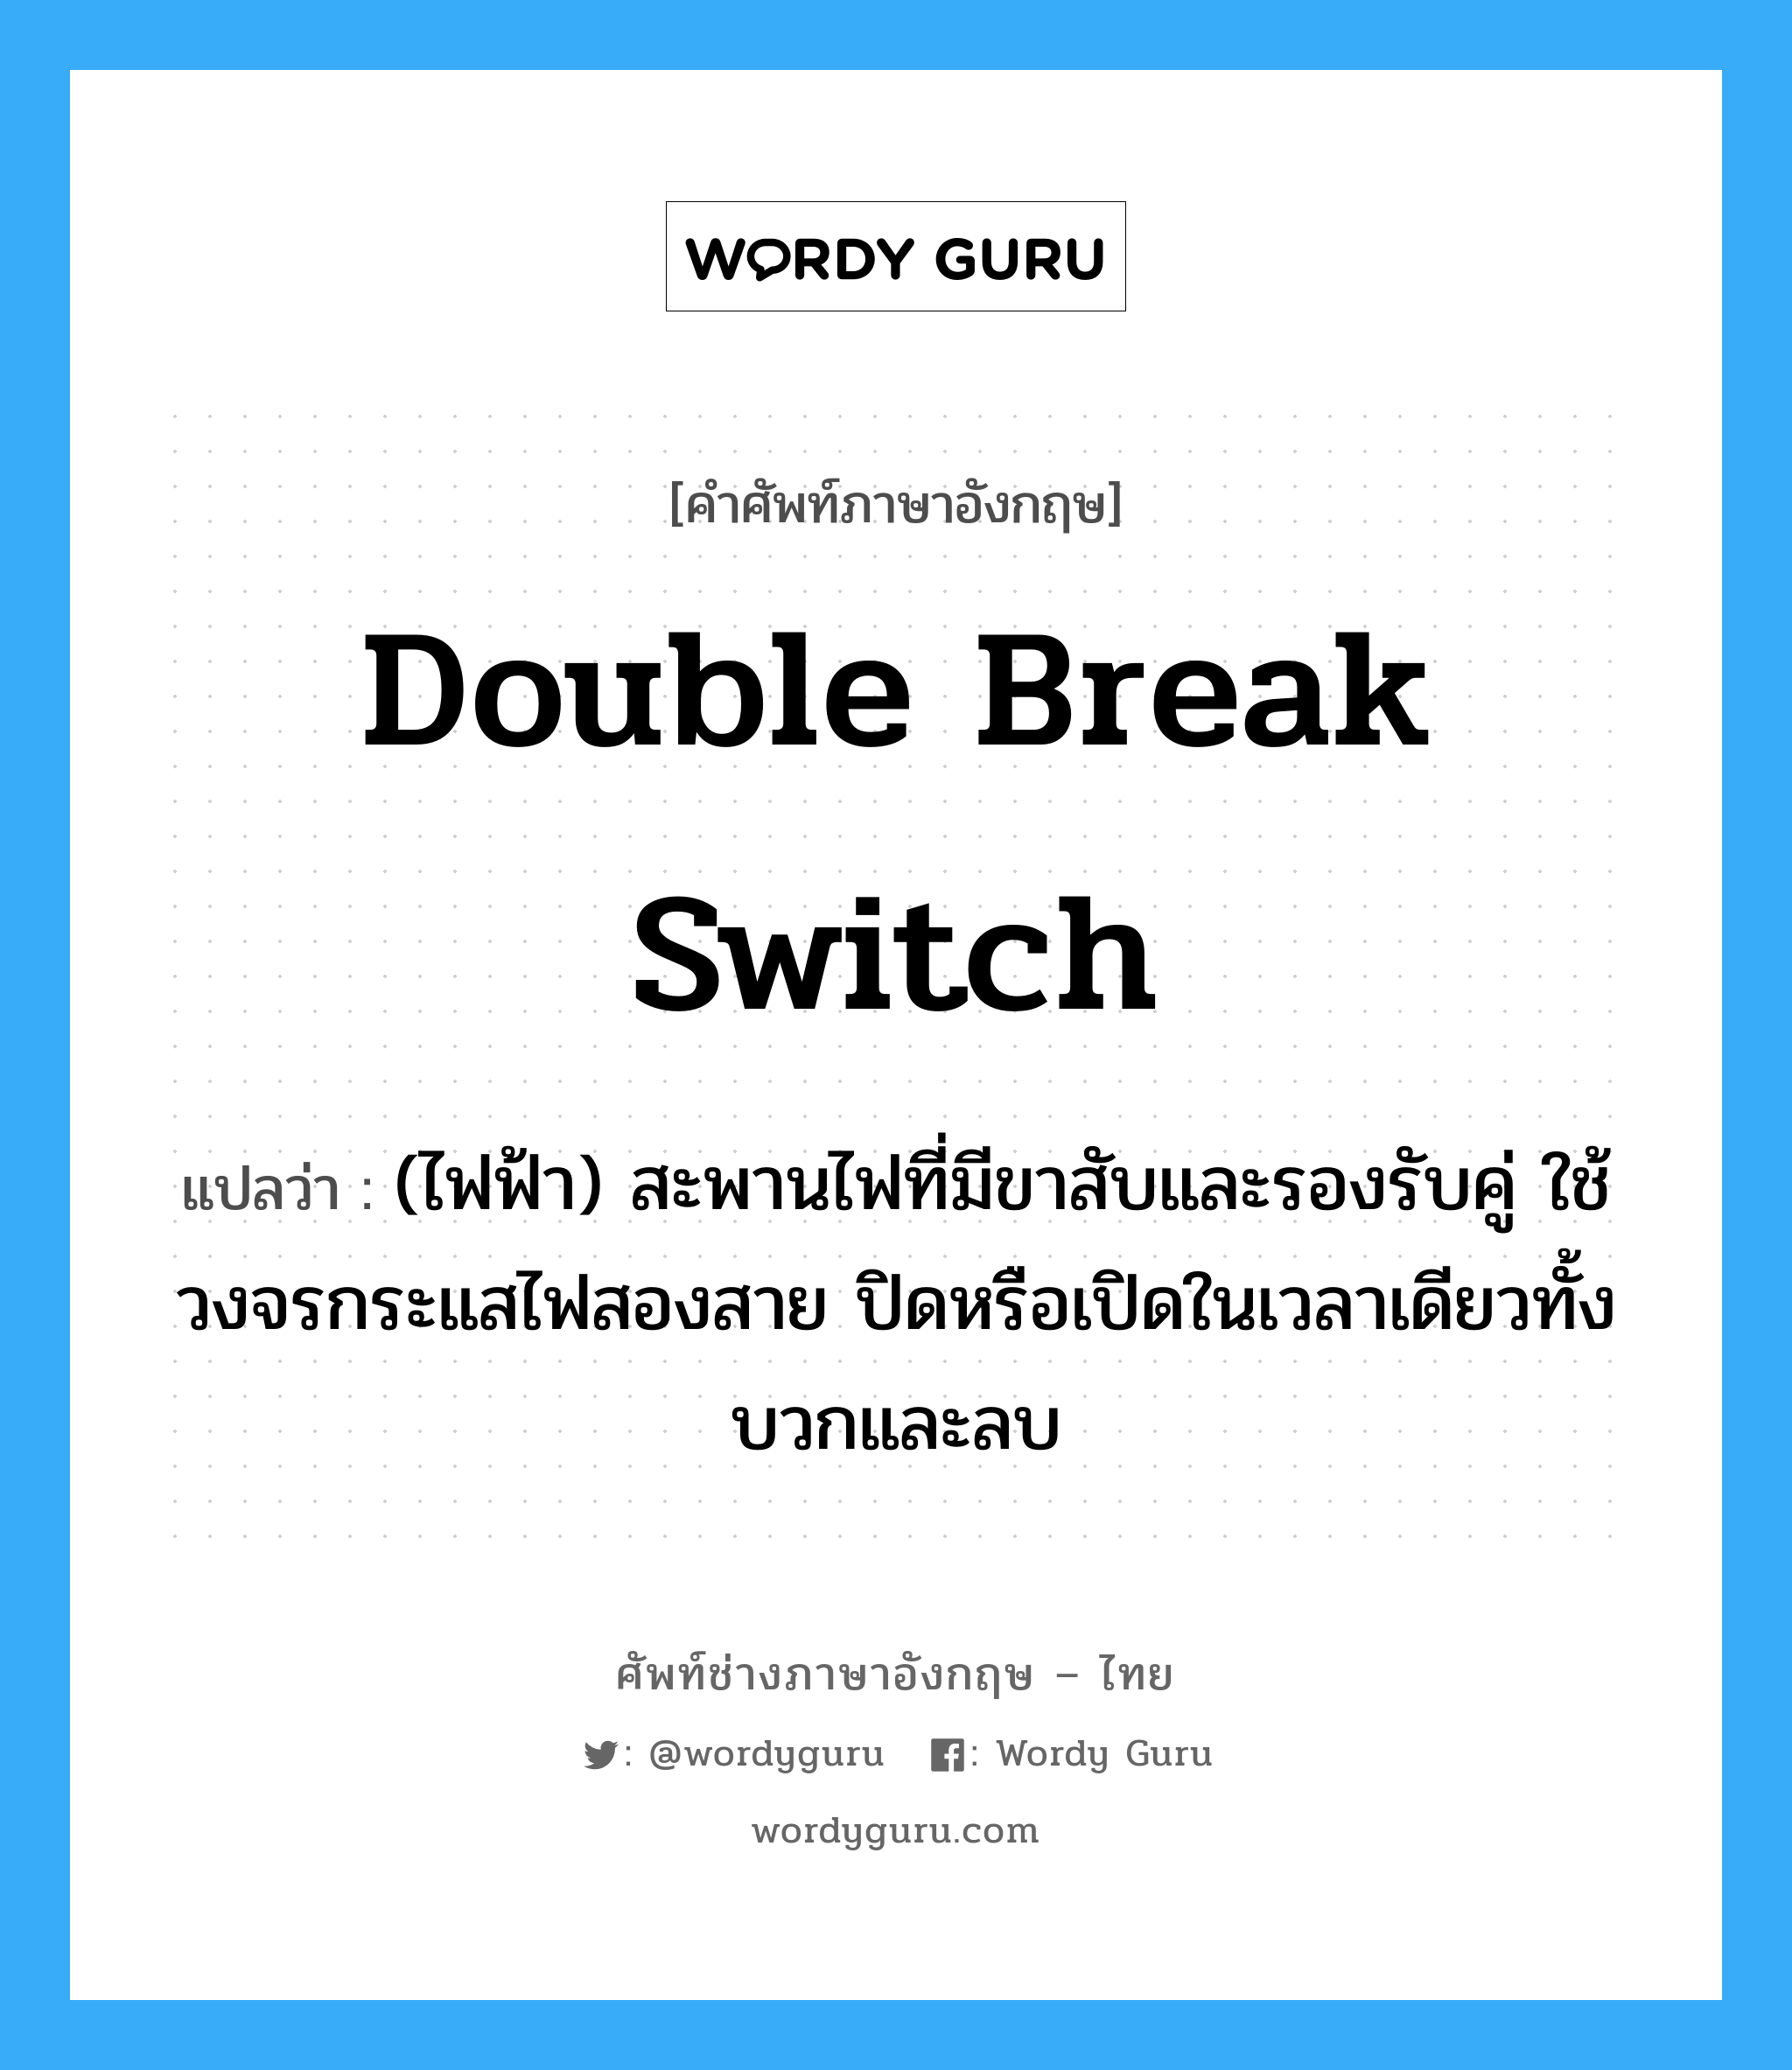 double break switch แปลว่า?, คำศัพท์ช่างภาษาอังกฤษ - ไทย double break switch คำศัพท์ภาษาอังกฤษ double break switch แปลว่า (ไฟฟ้า) สะพานไฟที่มีขาสับและรองรับคู่ ใช้วงจรกระแสไฟสองสาย ปิดหรือเปิดในเวลาเดียวทั้งบวกและลบ